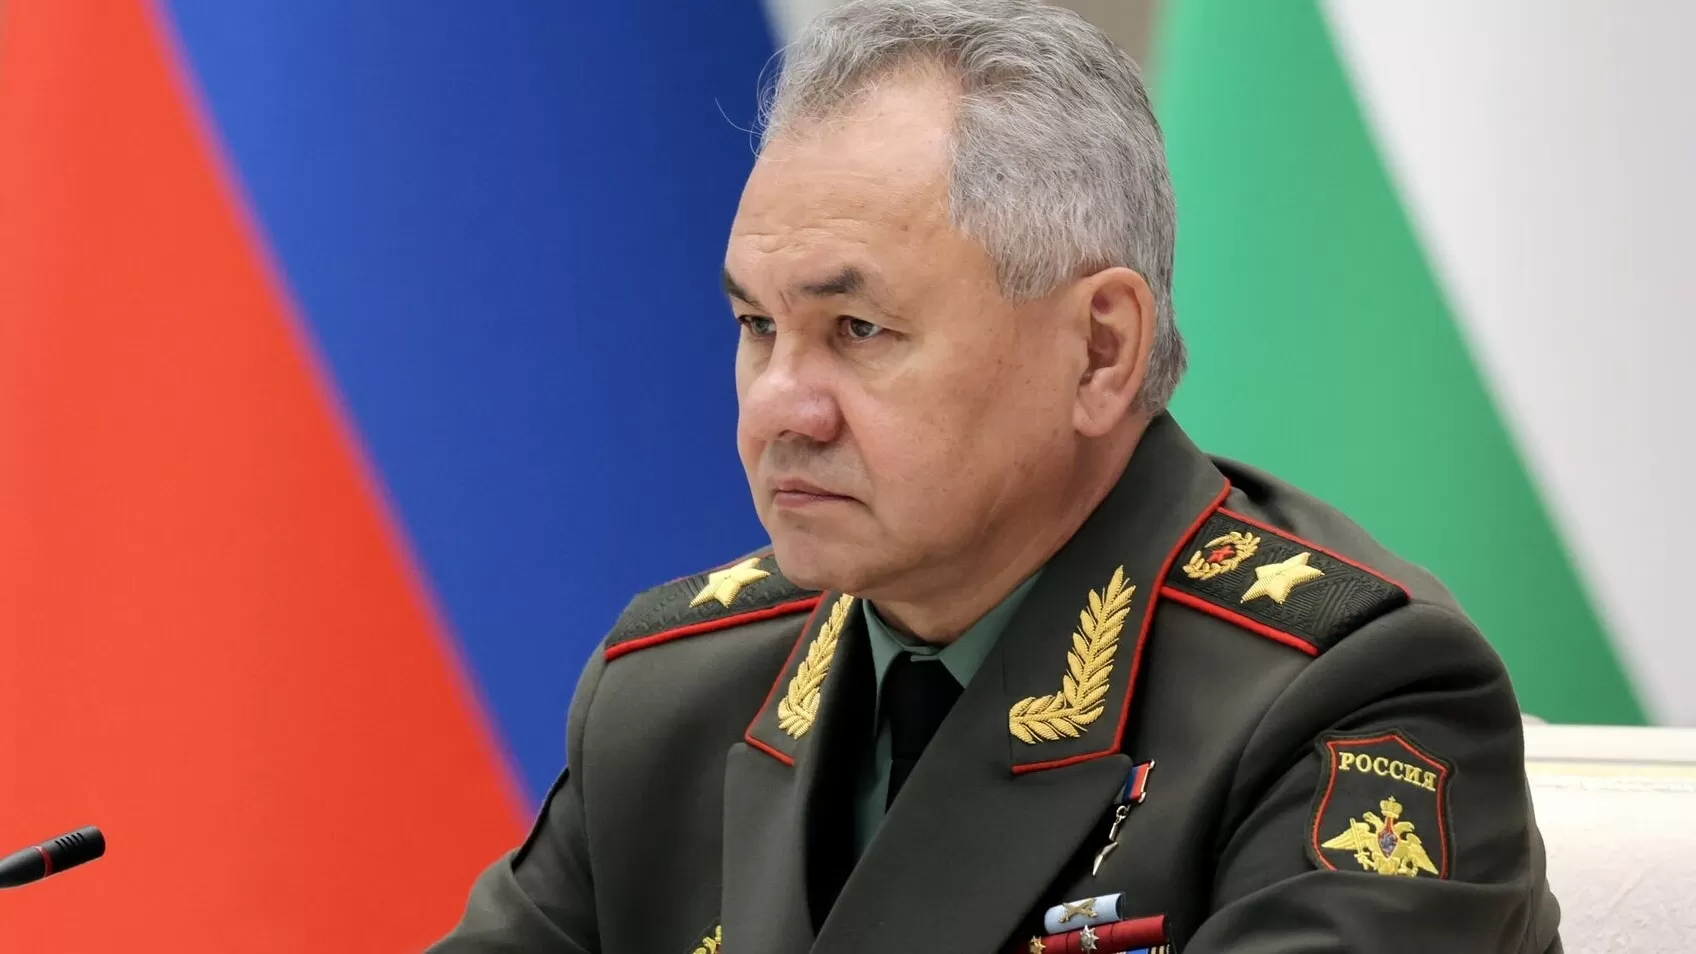 Ռուսաստանը կարող է վերանայել կասետային զինամթերքի կիրառումը մարտի դաշտում․ Շոյգու